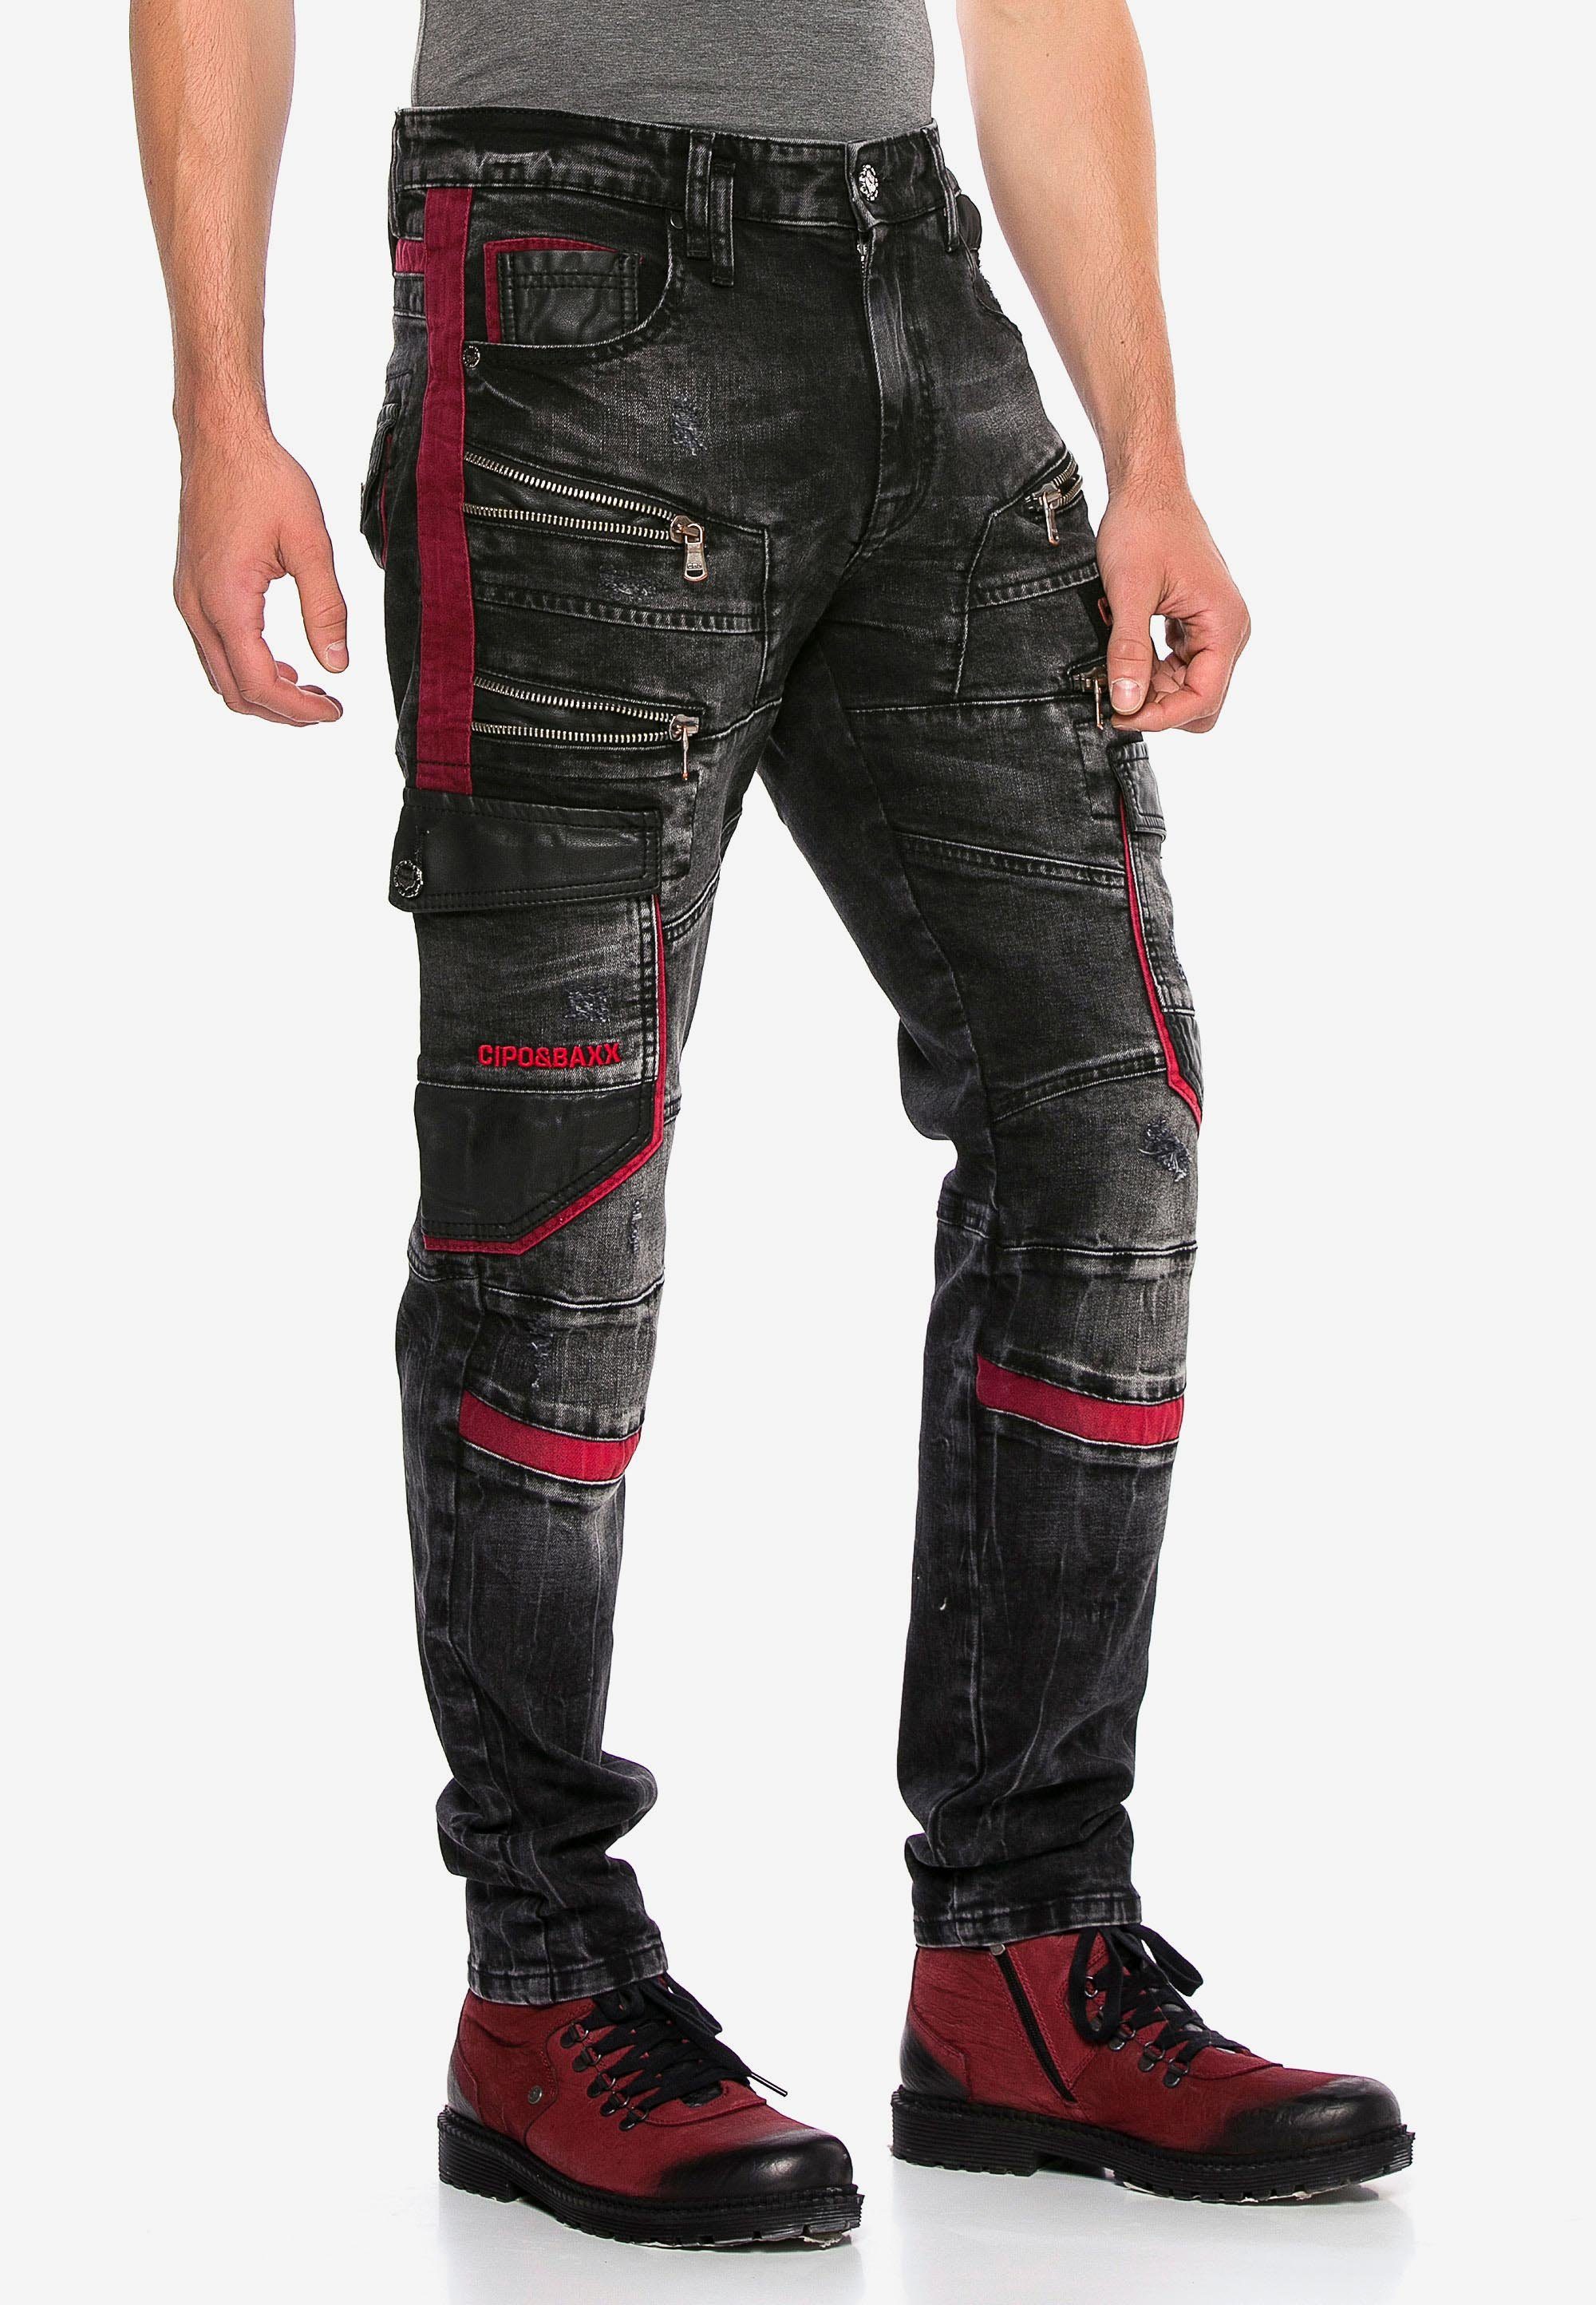 & Cipo Bequeme Jeans mit Elementen Baxx auffälligen